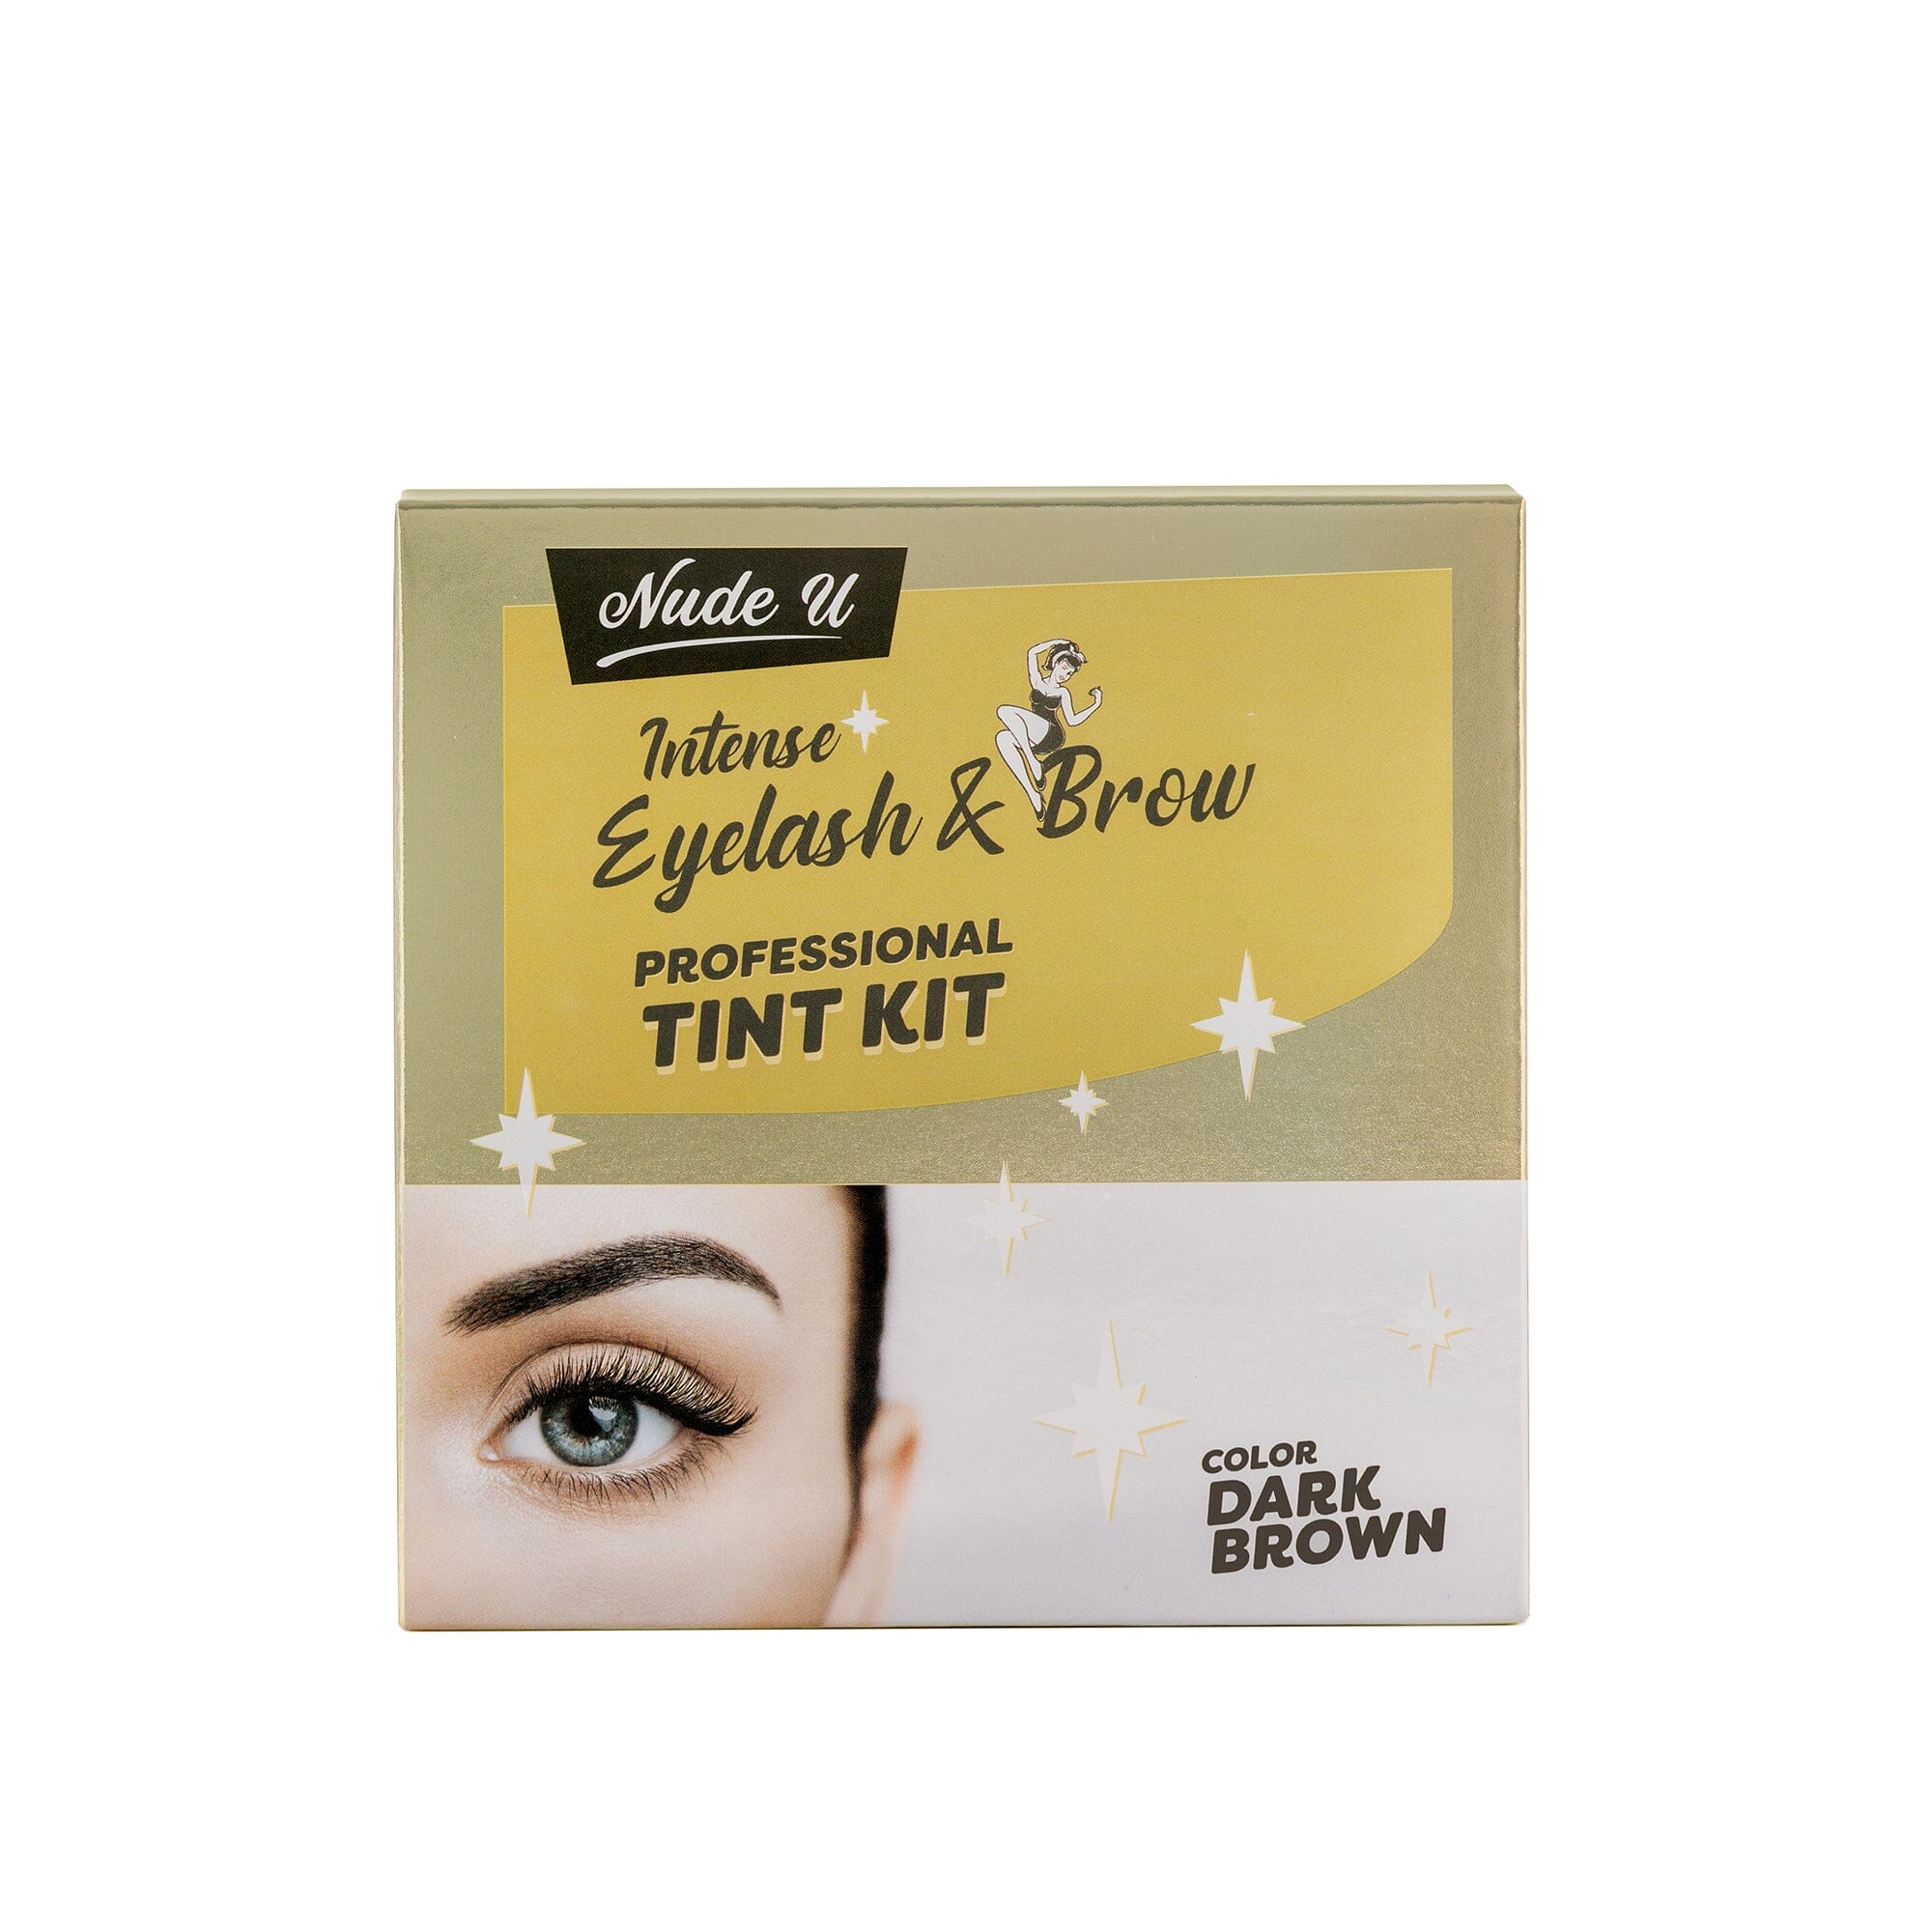 Intense Eyelash & Brow | Dark Brown | Professional Tint Kit | NUDE U